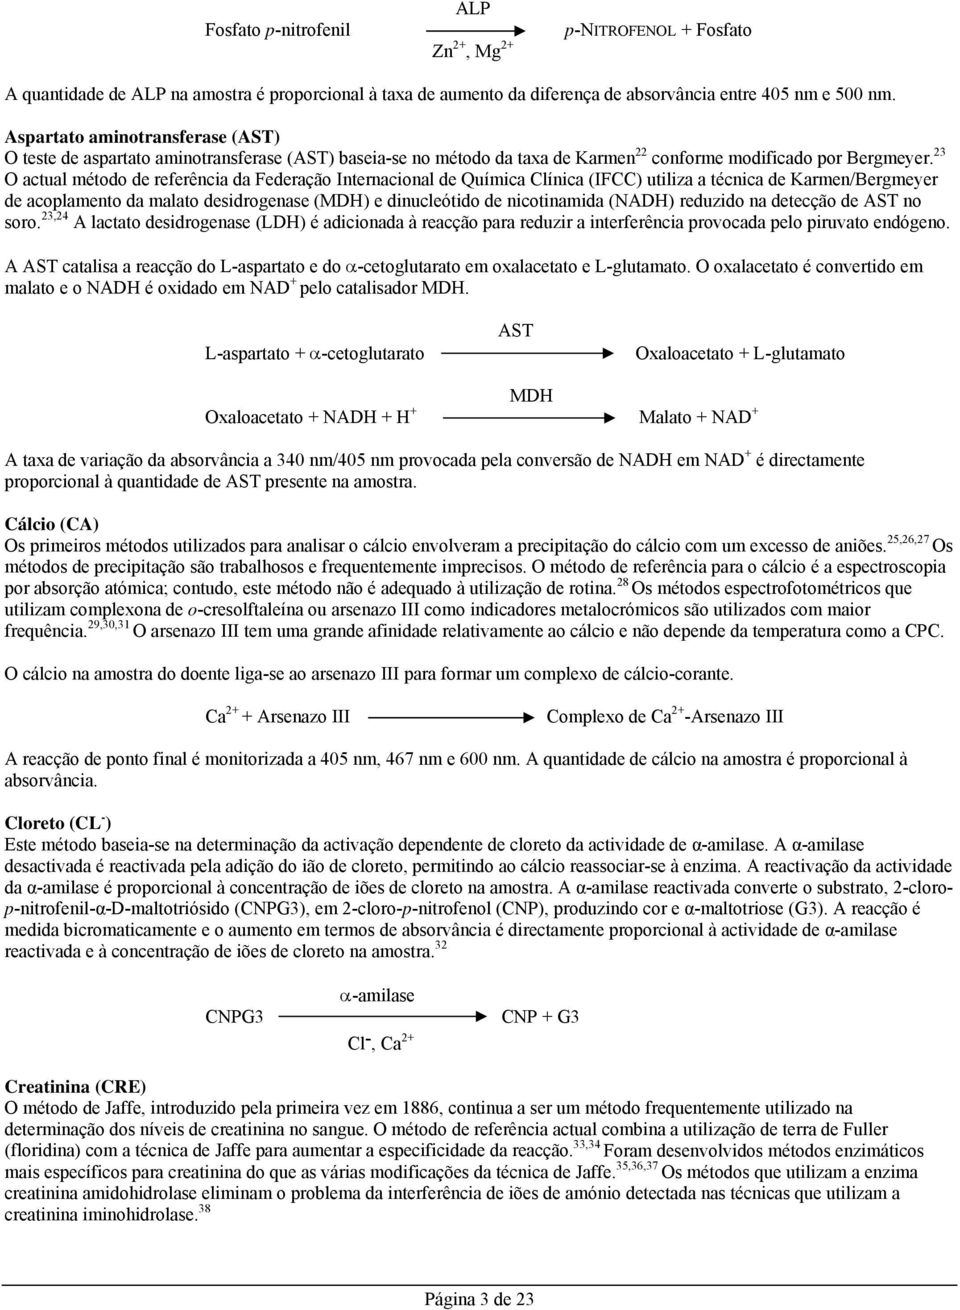 23 O actual método de referência da Federação Internacional de Química Clínica (IFCC) utiliza a técnica de Karmen/Bergmeyer de acoplamento da malato desidrogenase (MDH) e dinucleótido de nicotinamida